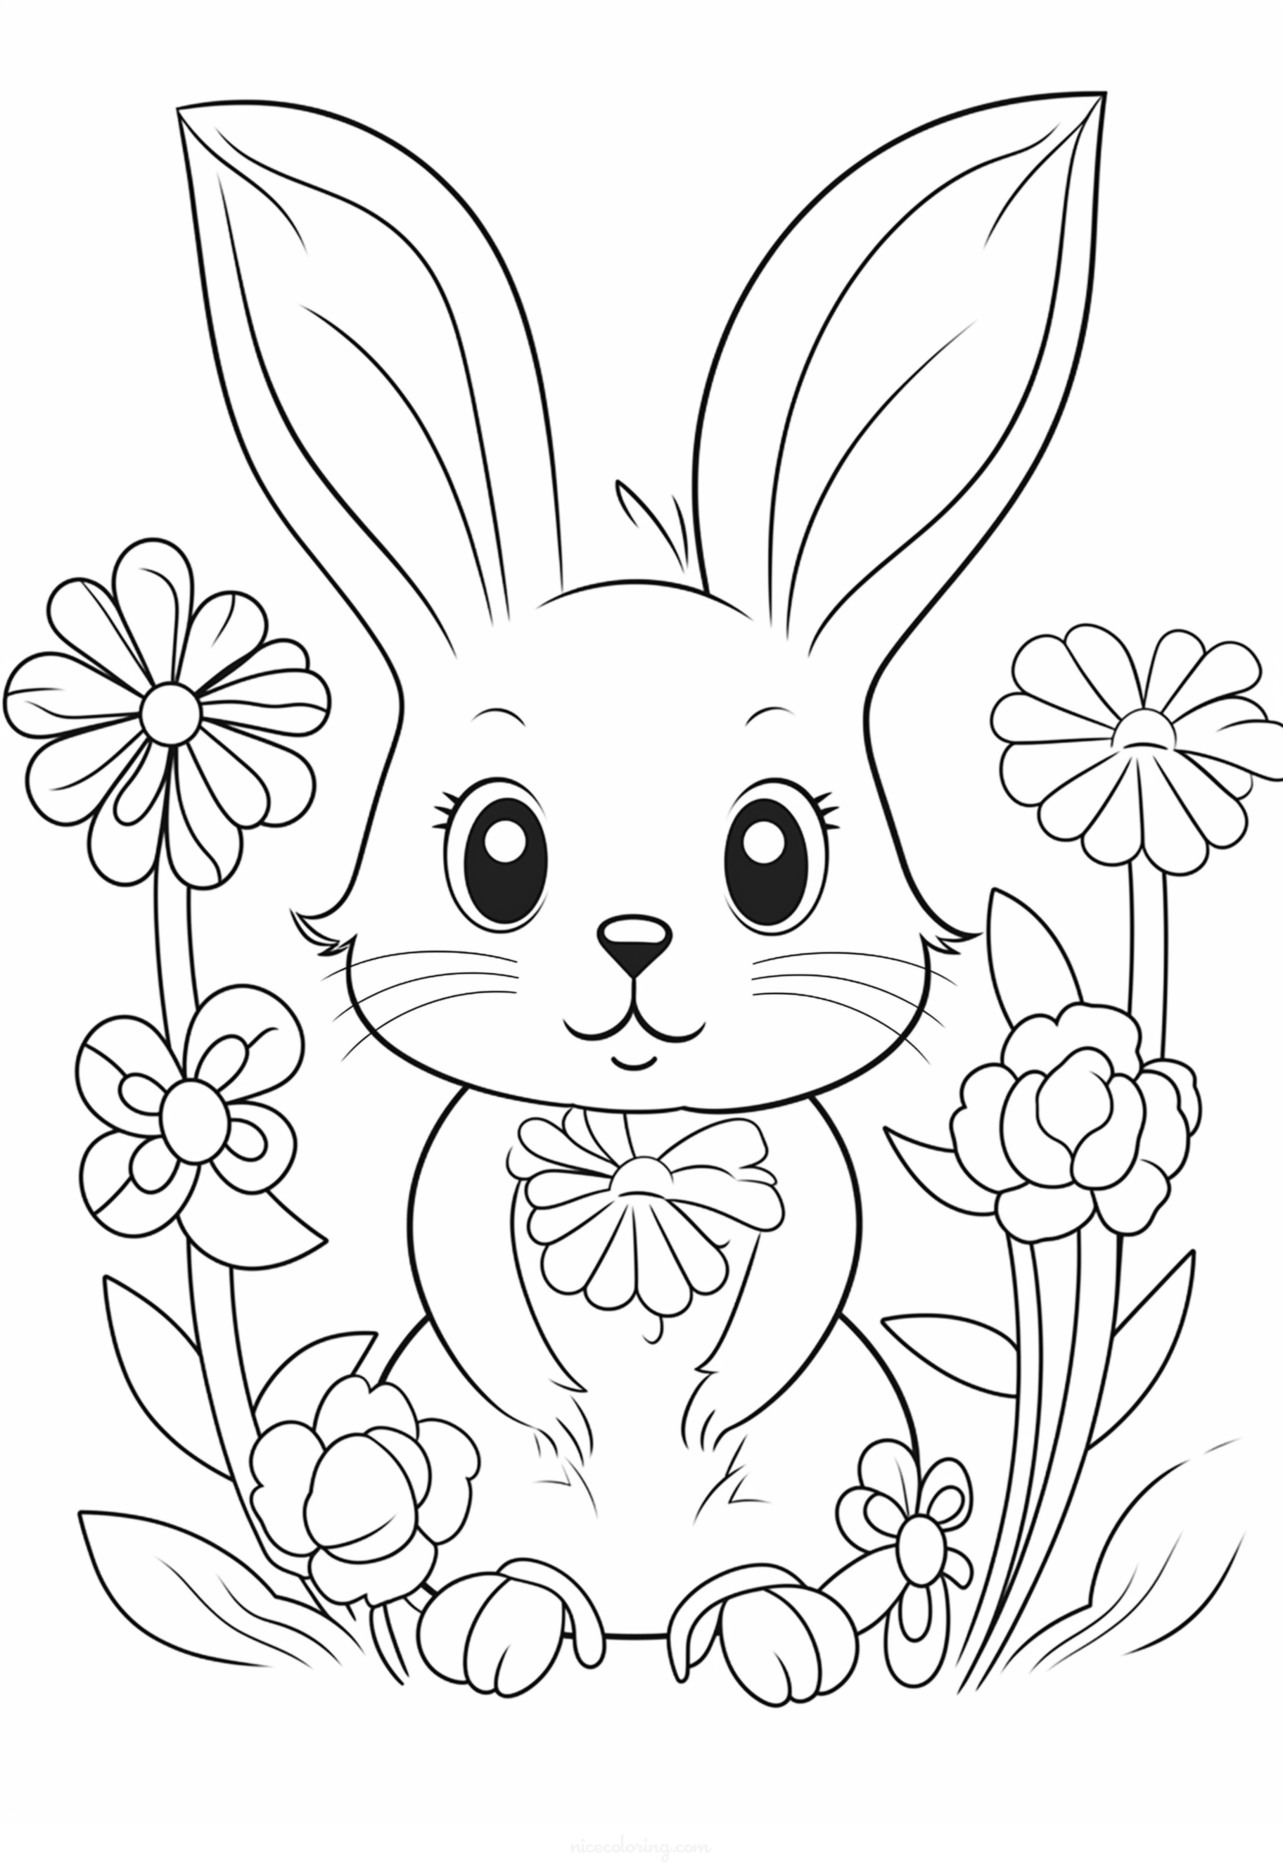 Image d'un lapin entouré de fleurs à colorier